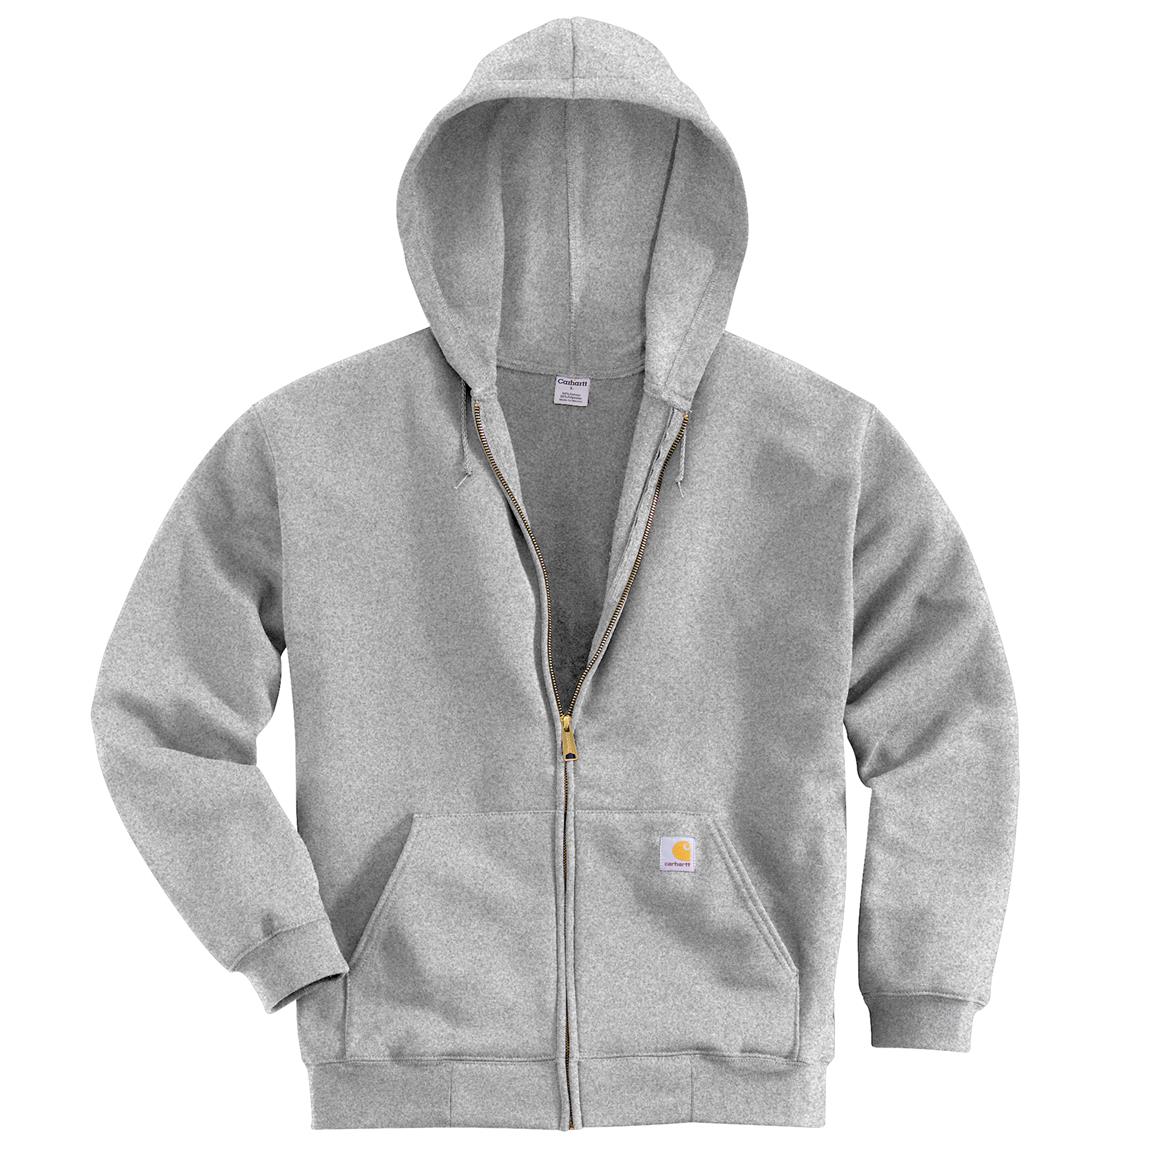 Carhartt Men's Hooded Zip Sweatshirt - 623527, Sweatshirts & Hoodies at ...